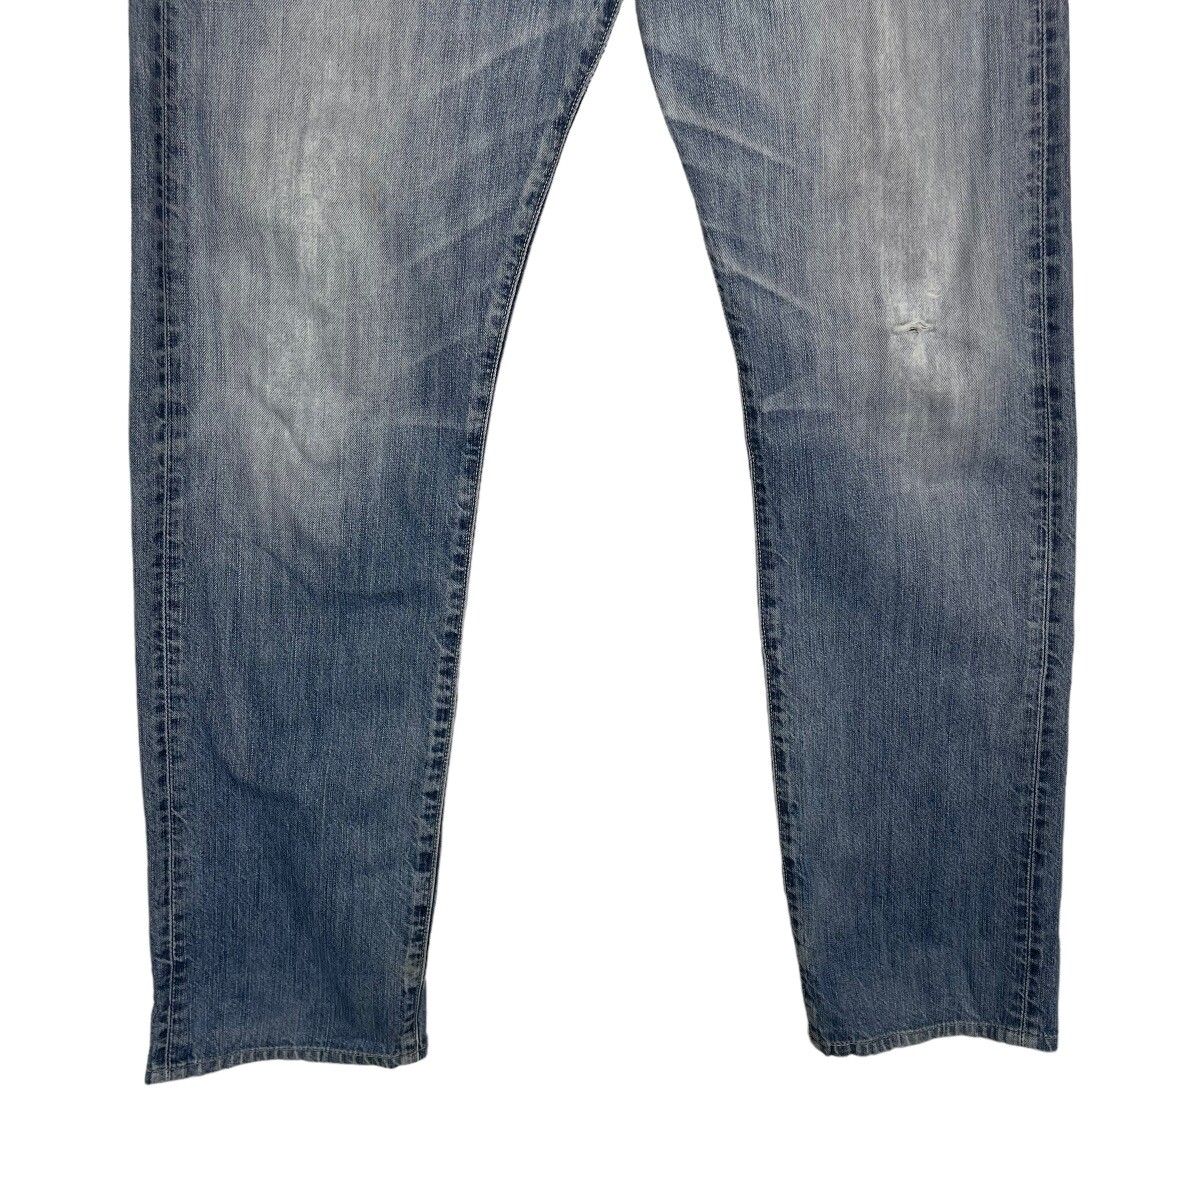 Vintage Levis Classic Lot 202 Jeans - 4